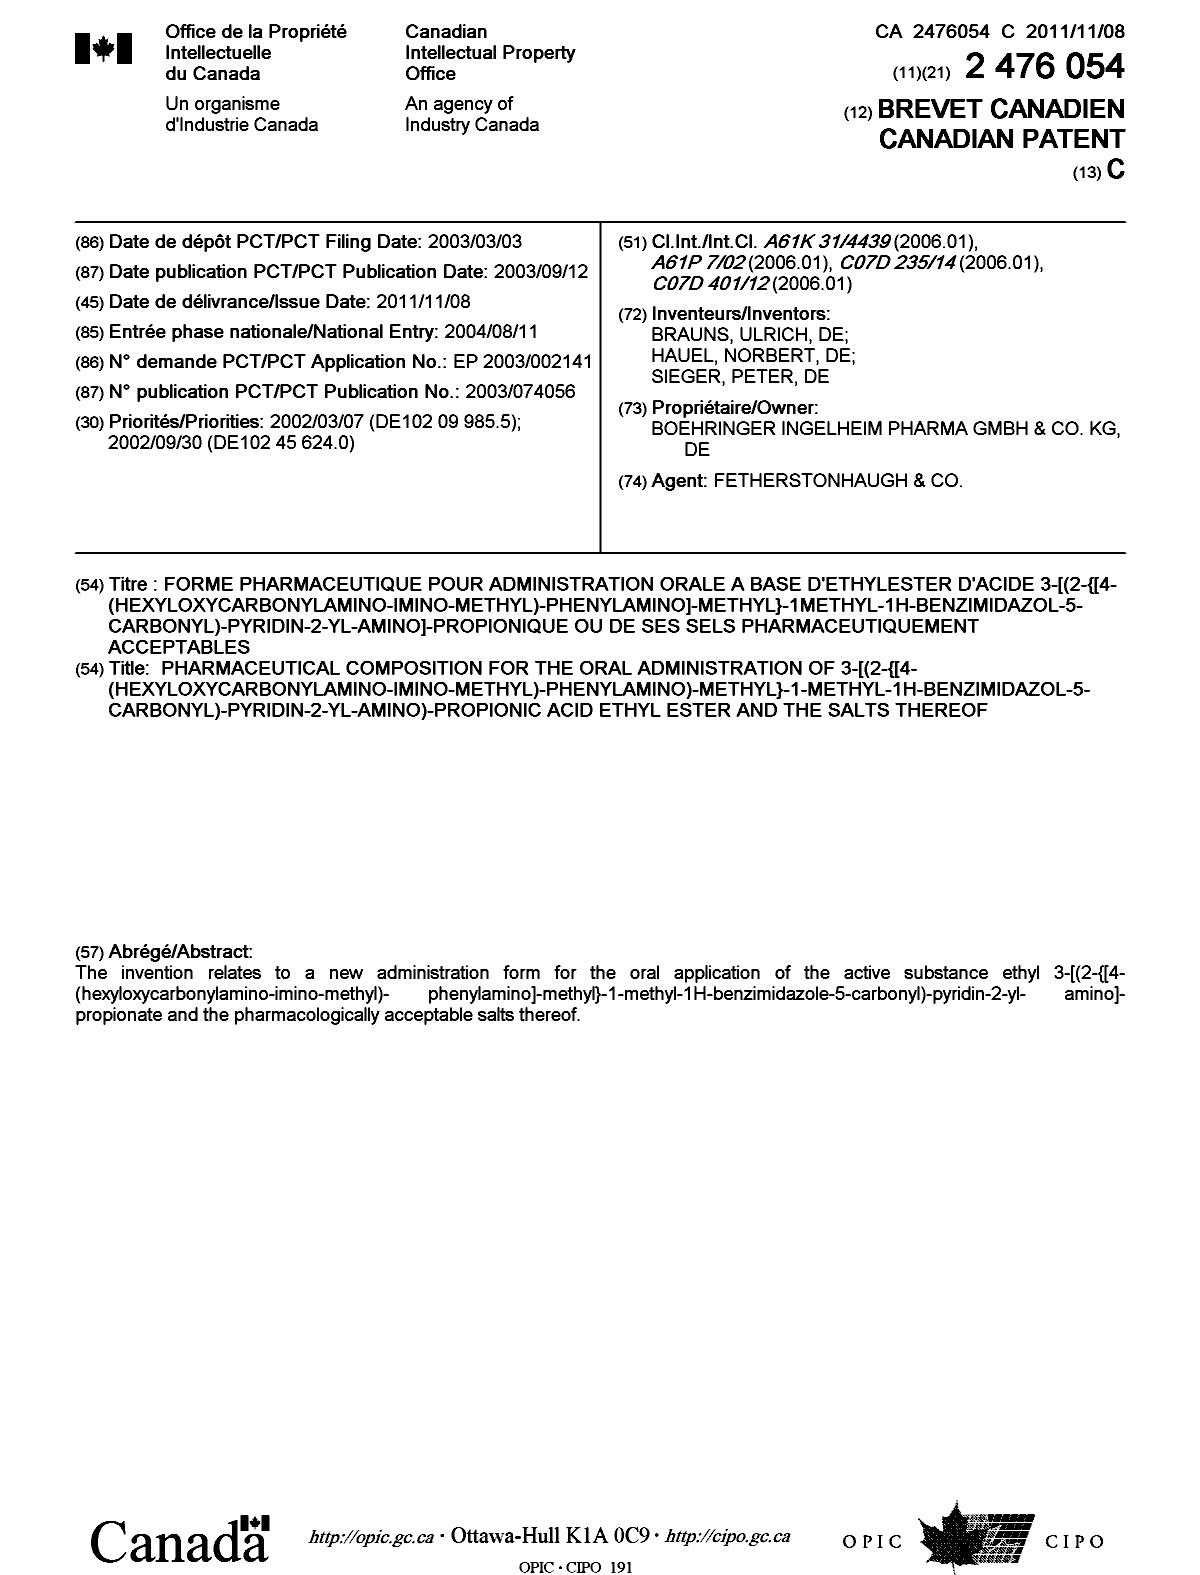 Document de brevet canadien 2476054. Page couverture 20111004. Image 1 de 1